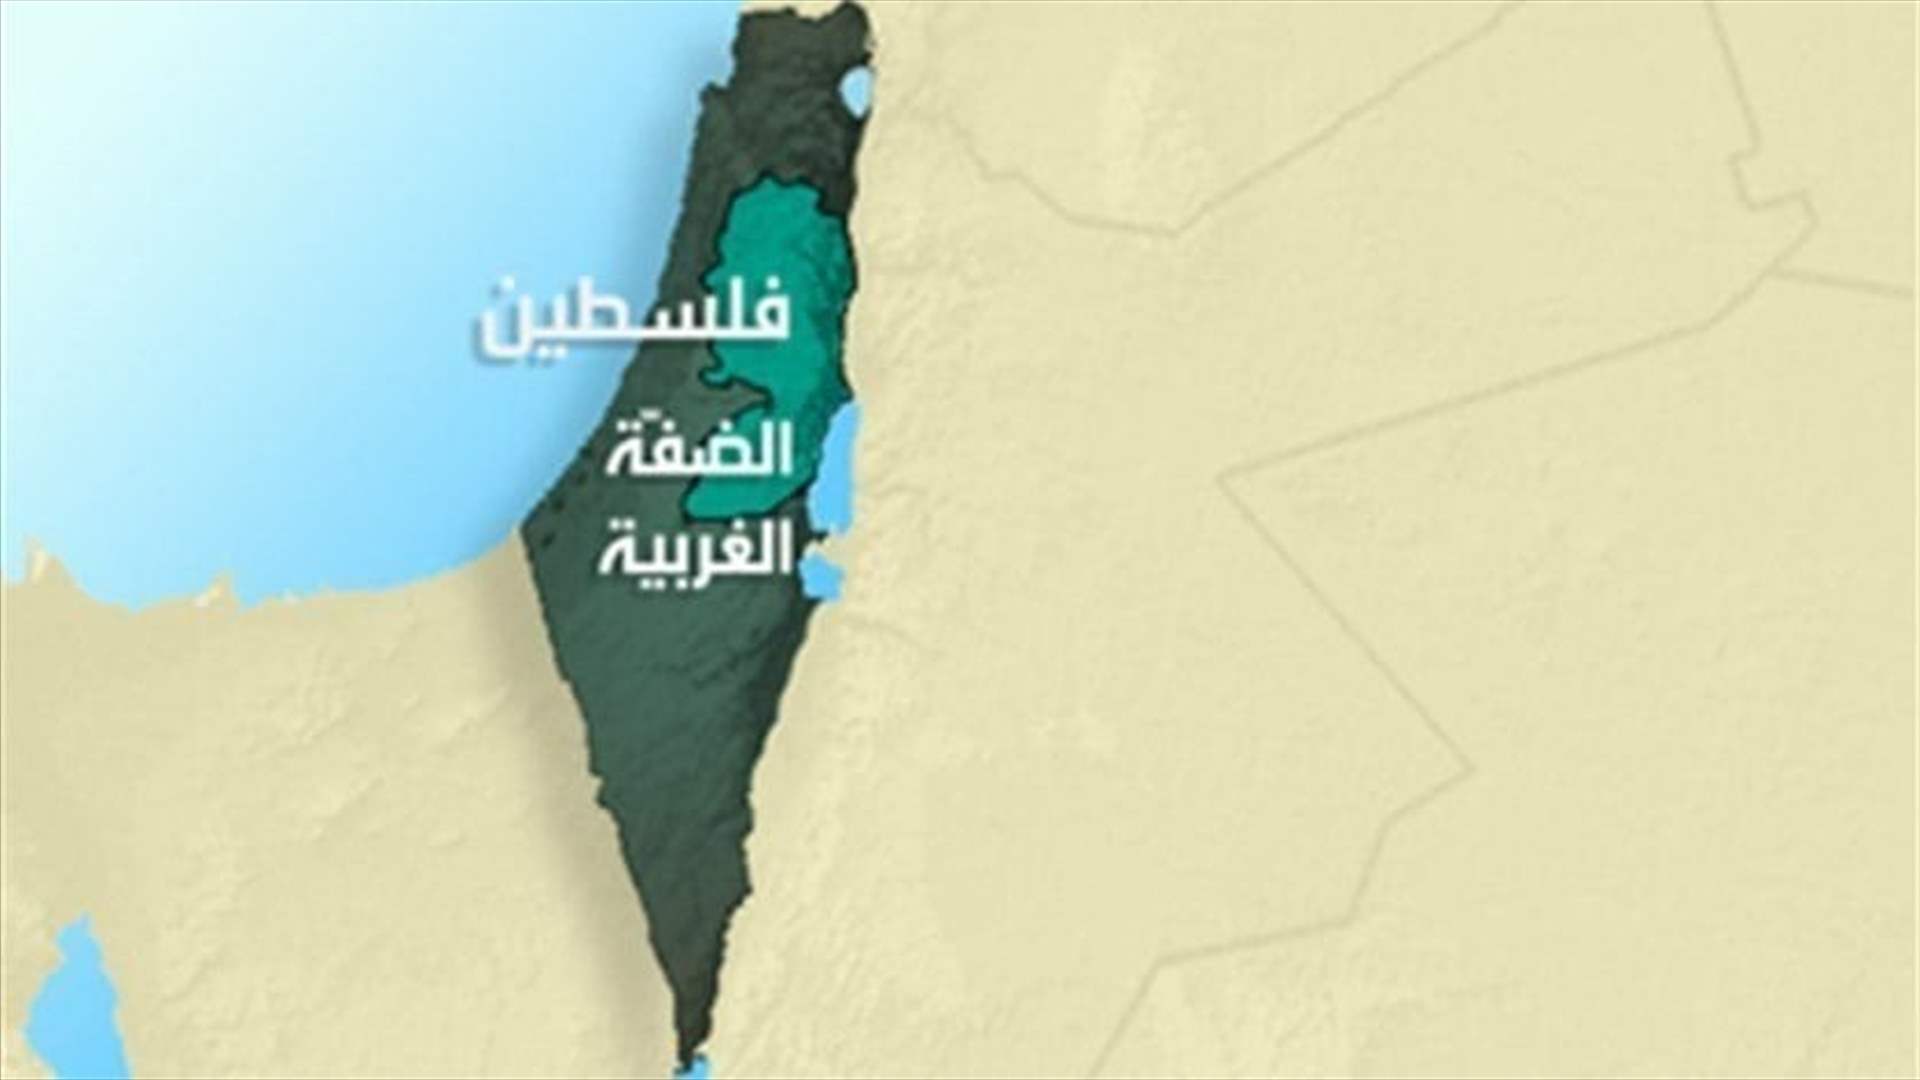 هجوم صدما في الضفة الغربية المحتلة ومقتل مشتبه به 